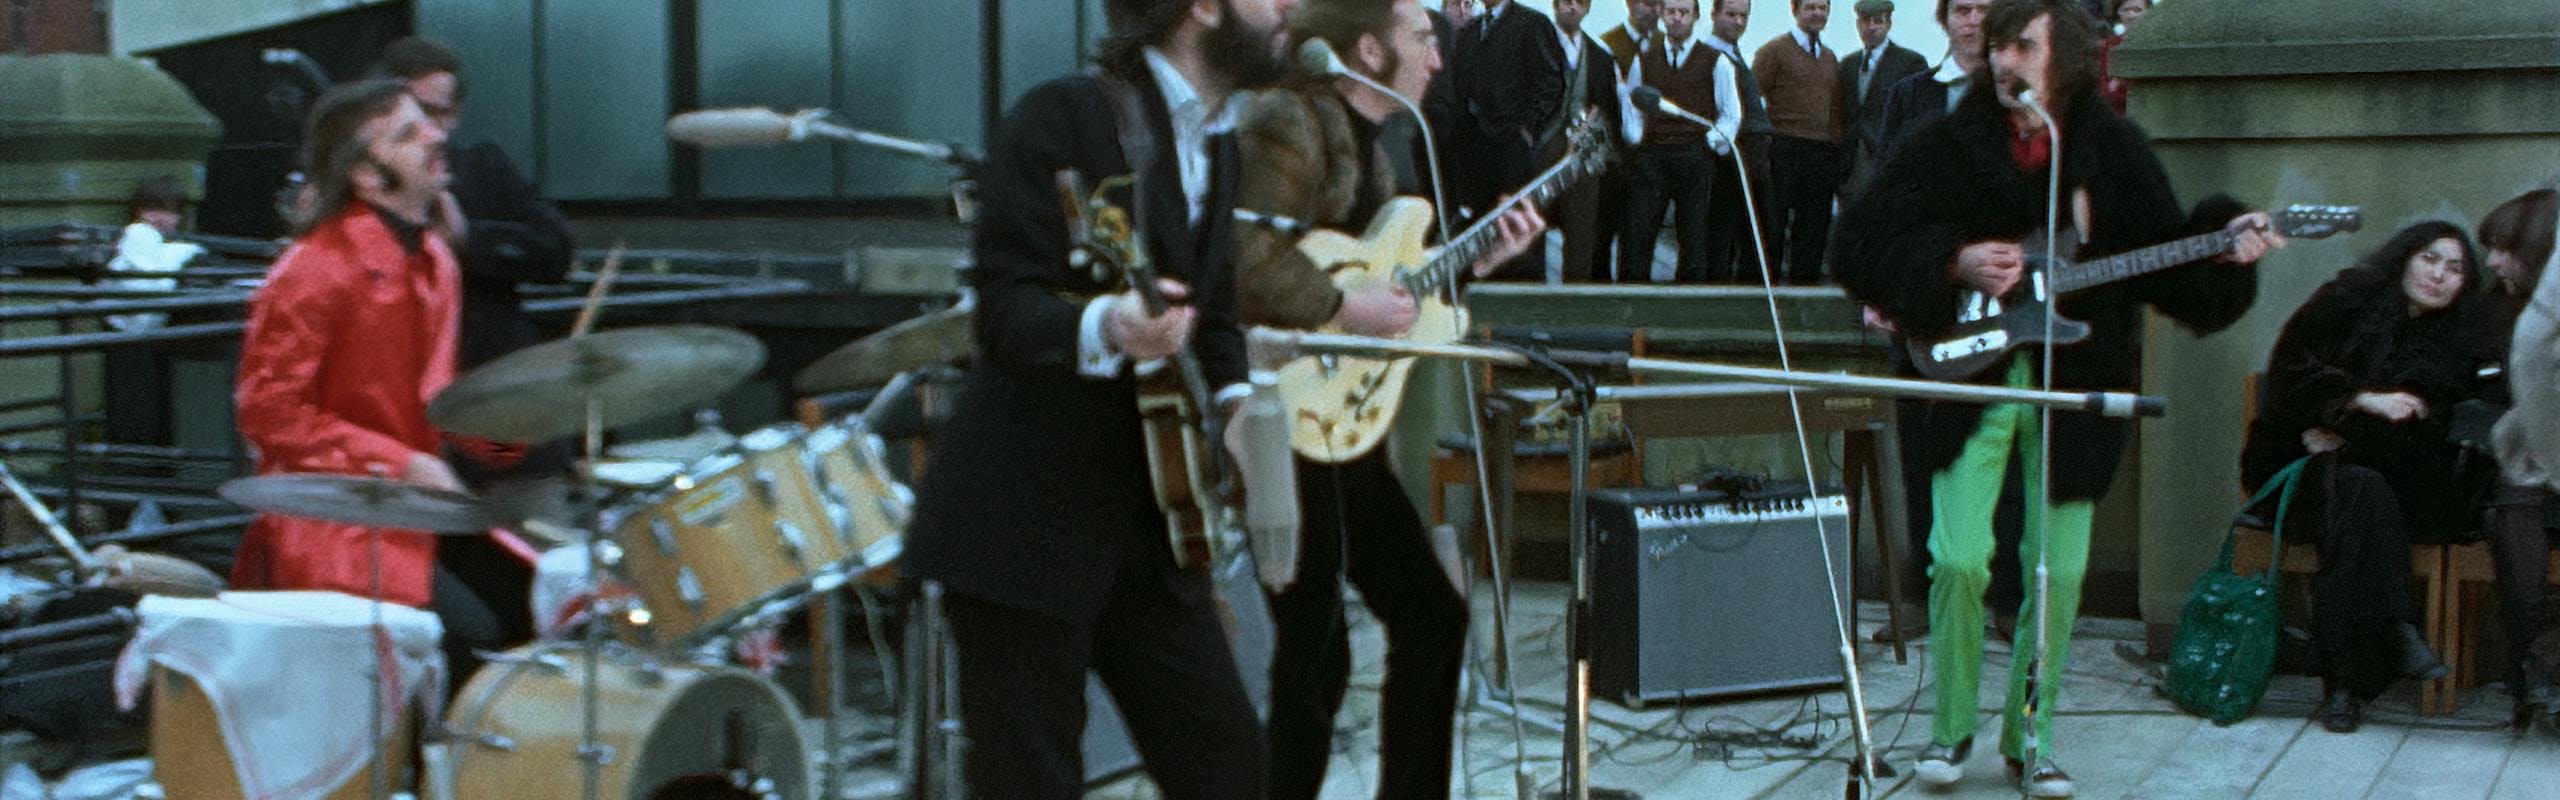 Ringo Starr, Paul McCartney, John Lennon et George Harrison dans The Beatles: Get Back. Photo courtesy of Apple Records Ltd. Copyright Apple Corps Ltd. Tous droits réservés.